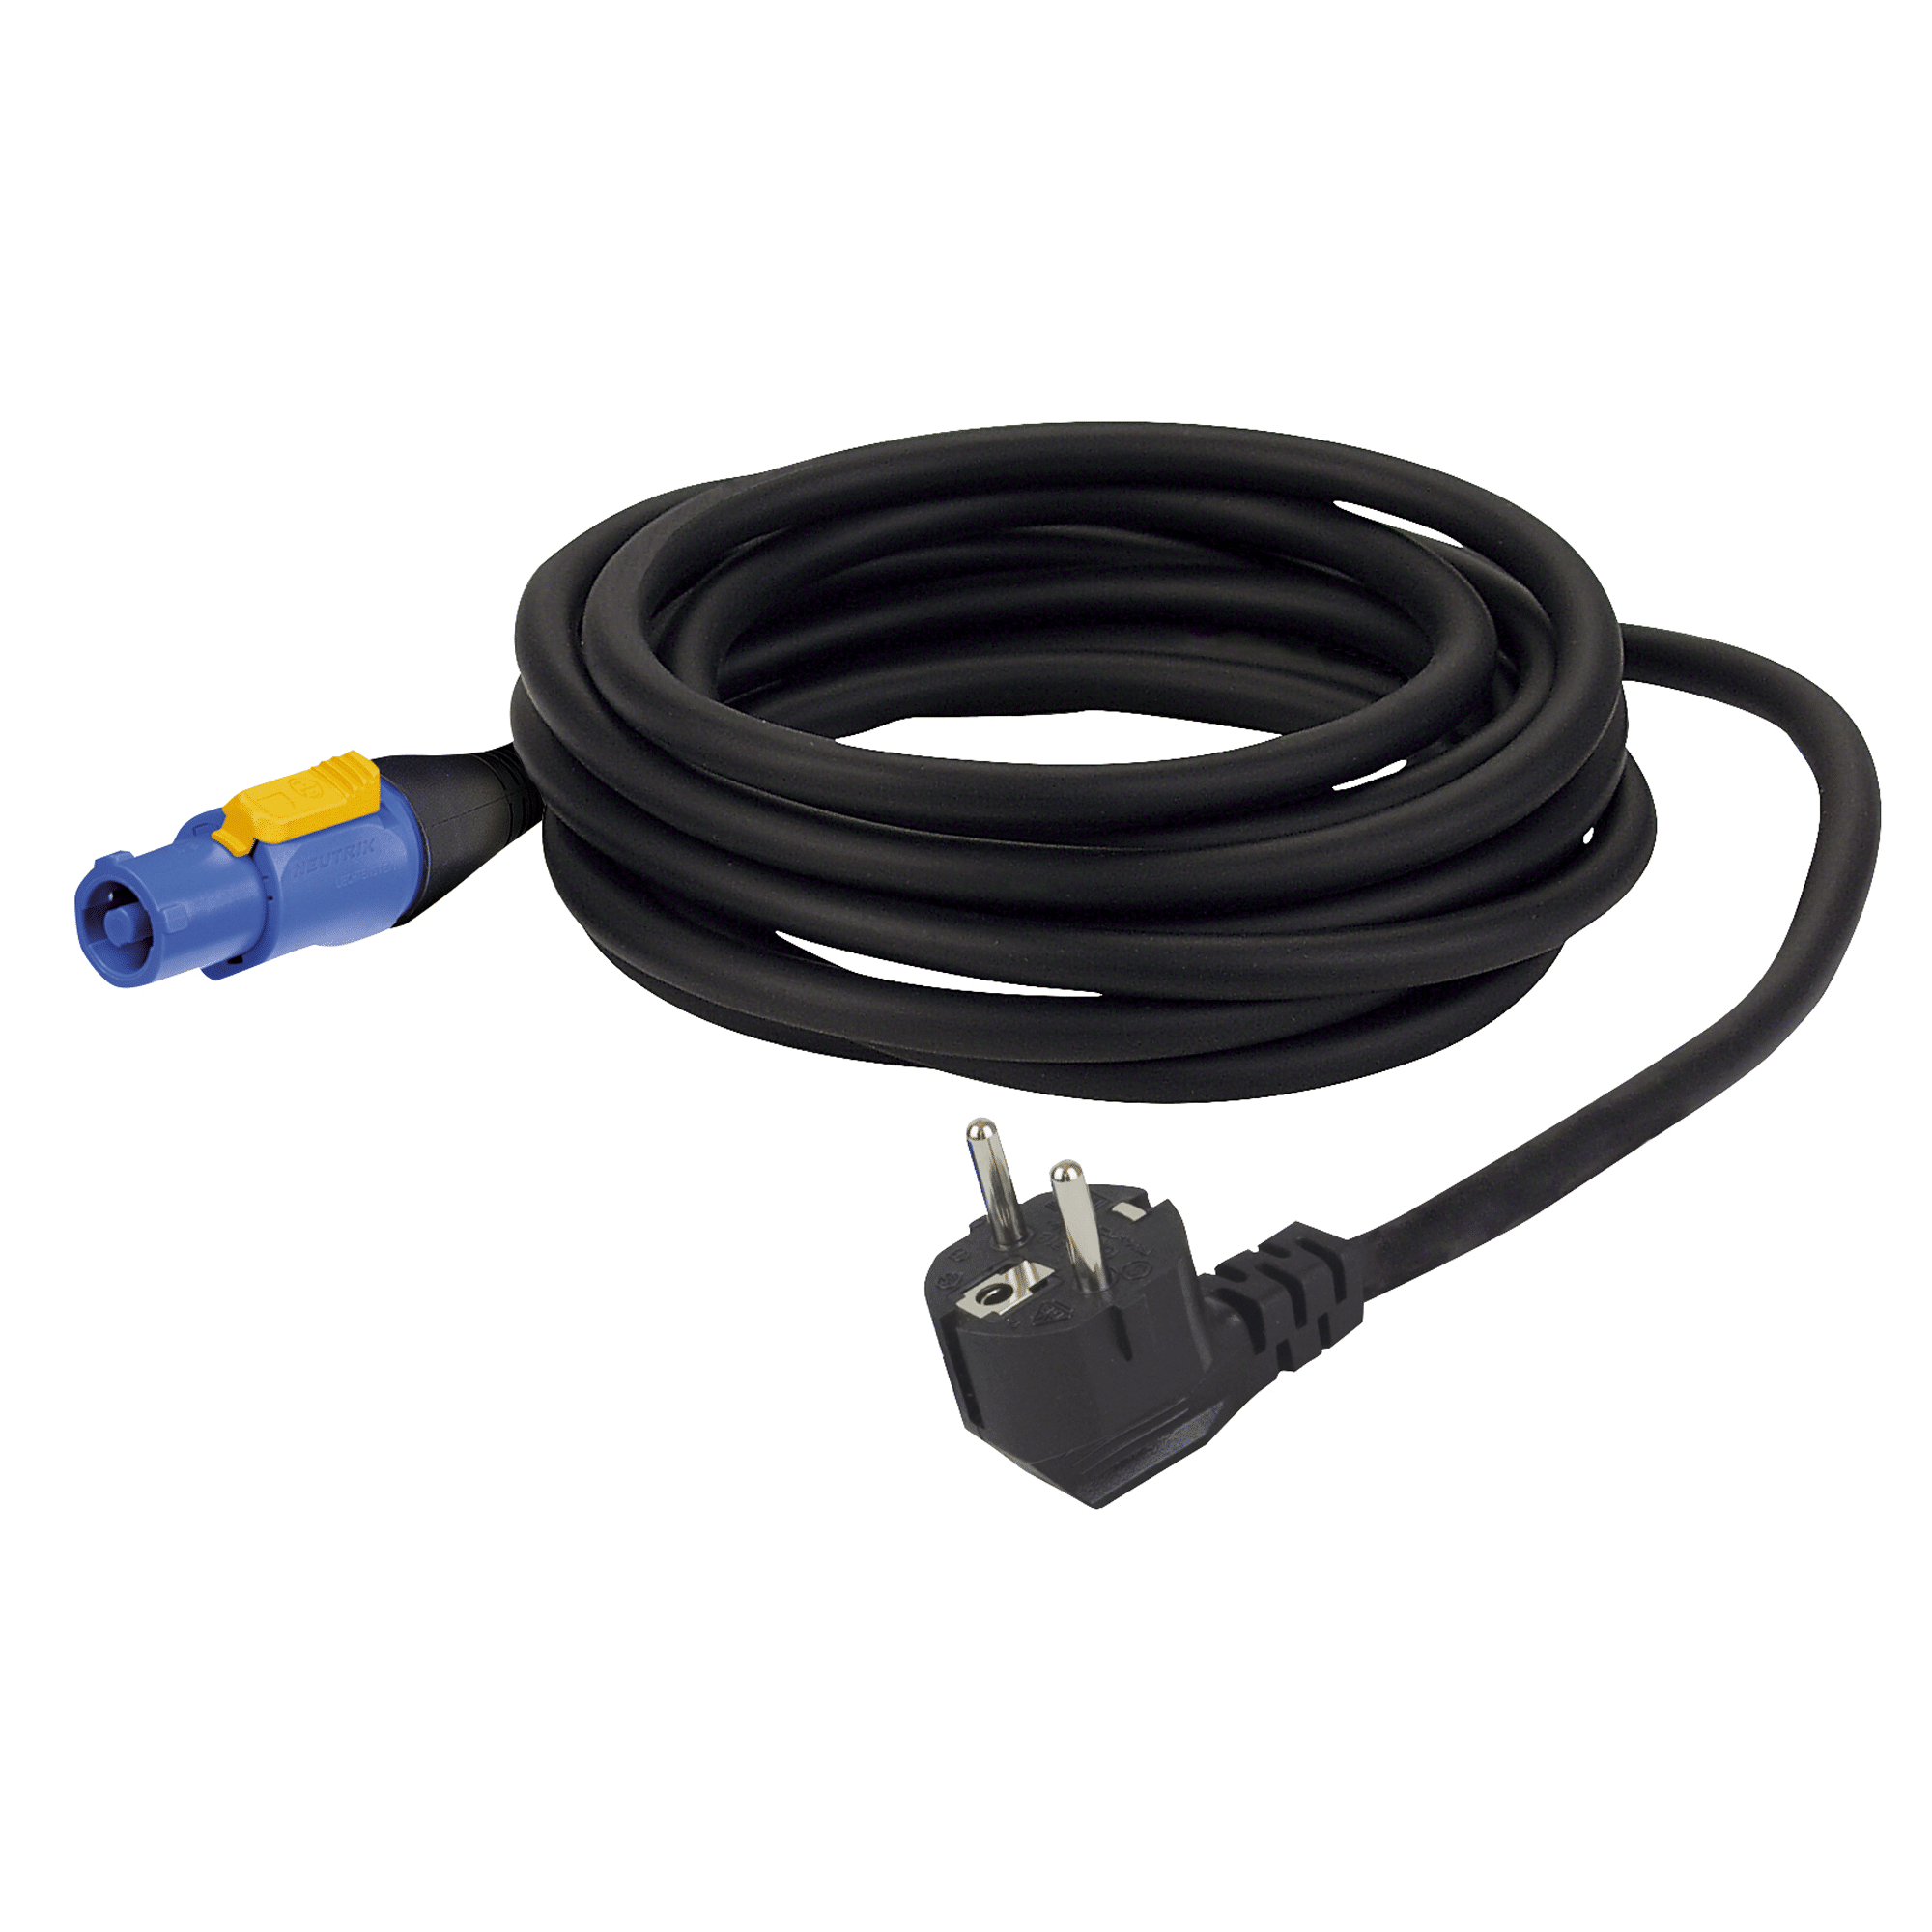 Power Cable Neutrik powerCON to Schuko 3x 1.5 mm² - Onlinediscowinkel.nl